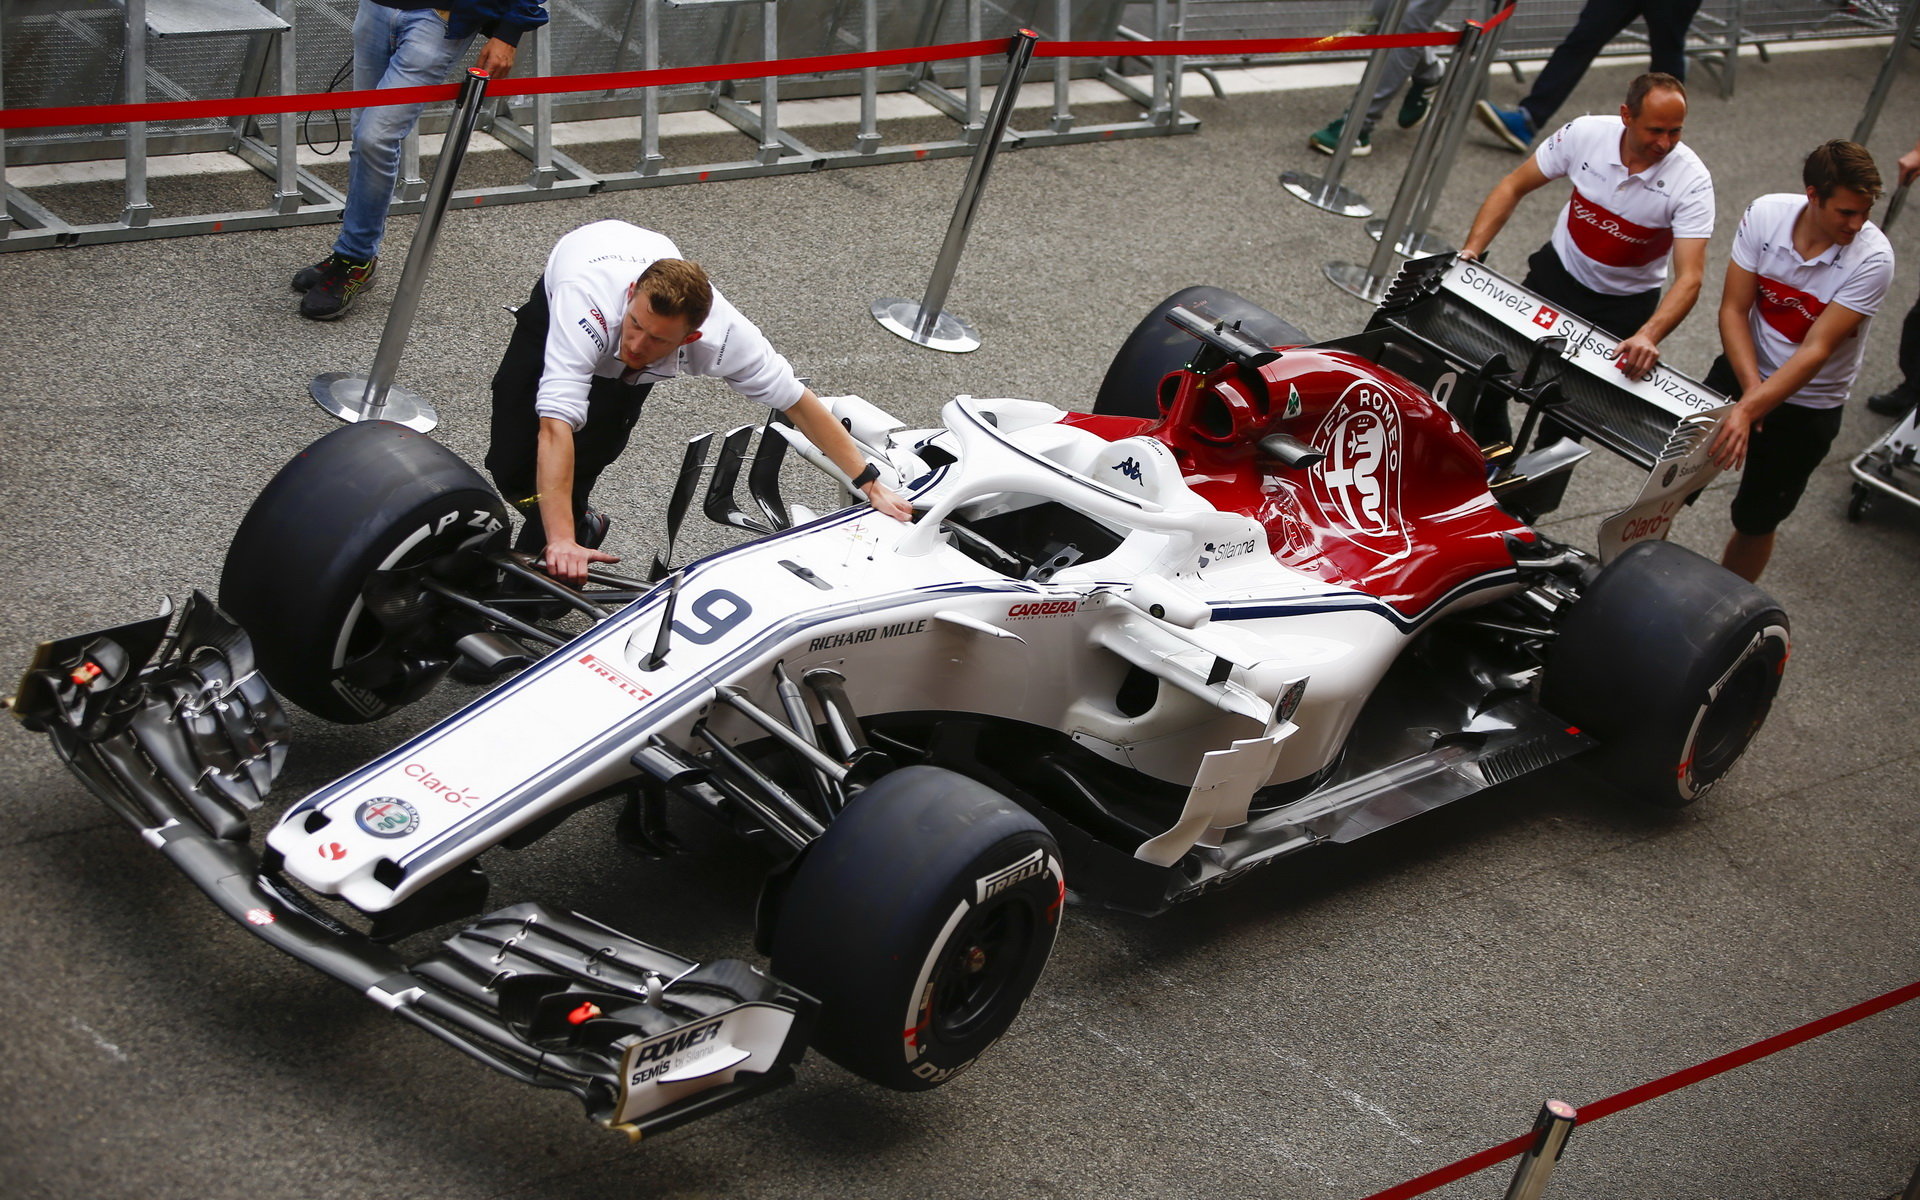 Přípravy týmu Sauber pro trénink ve Španělsku